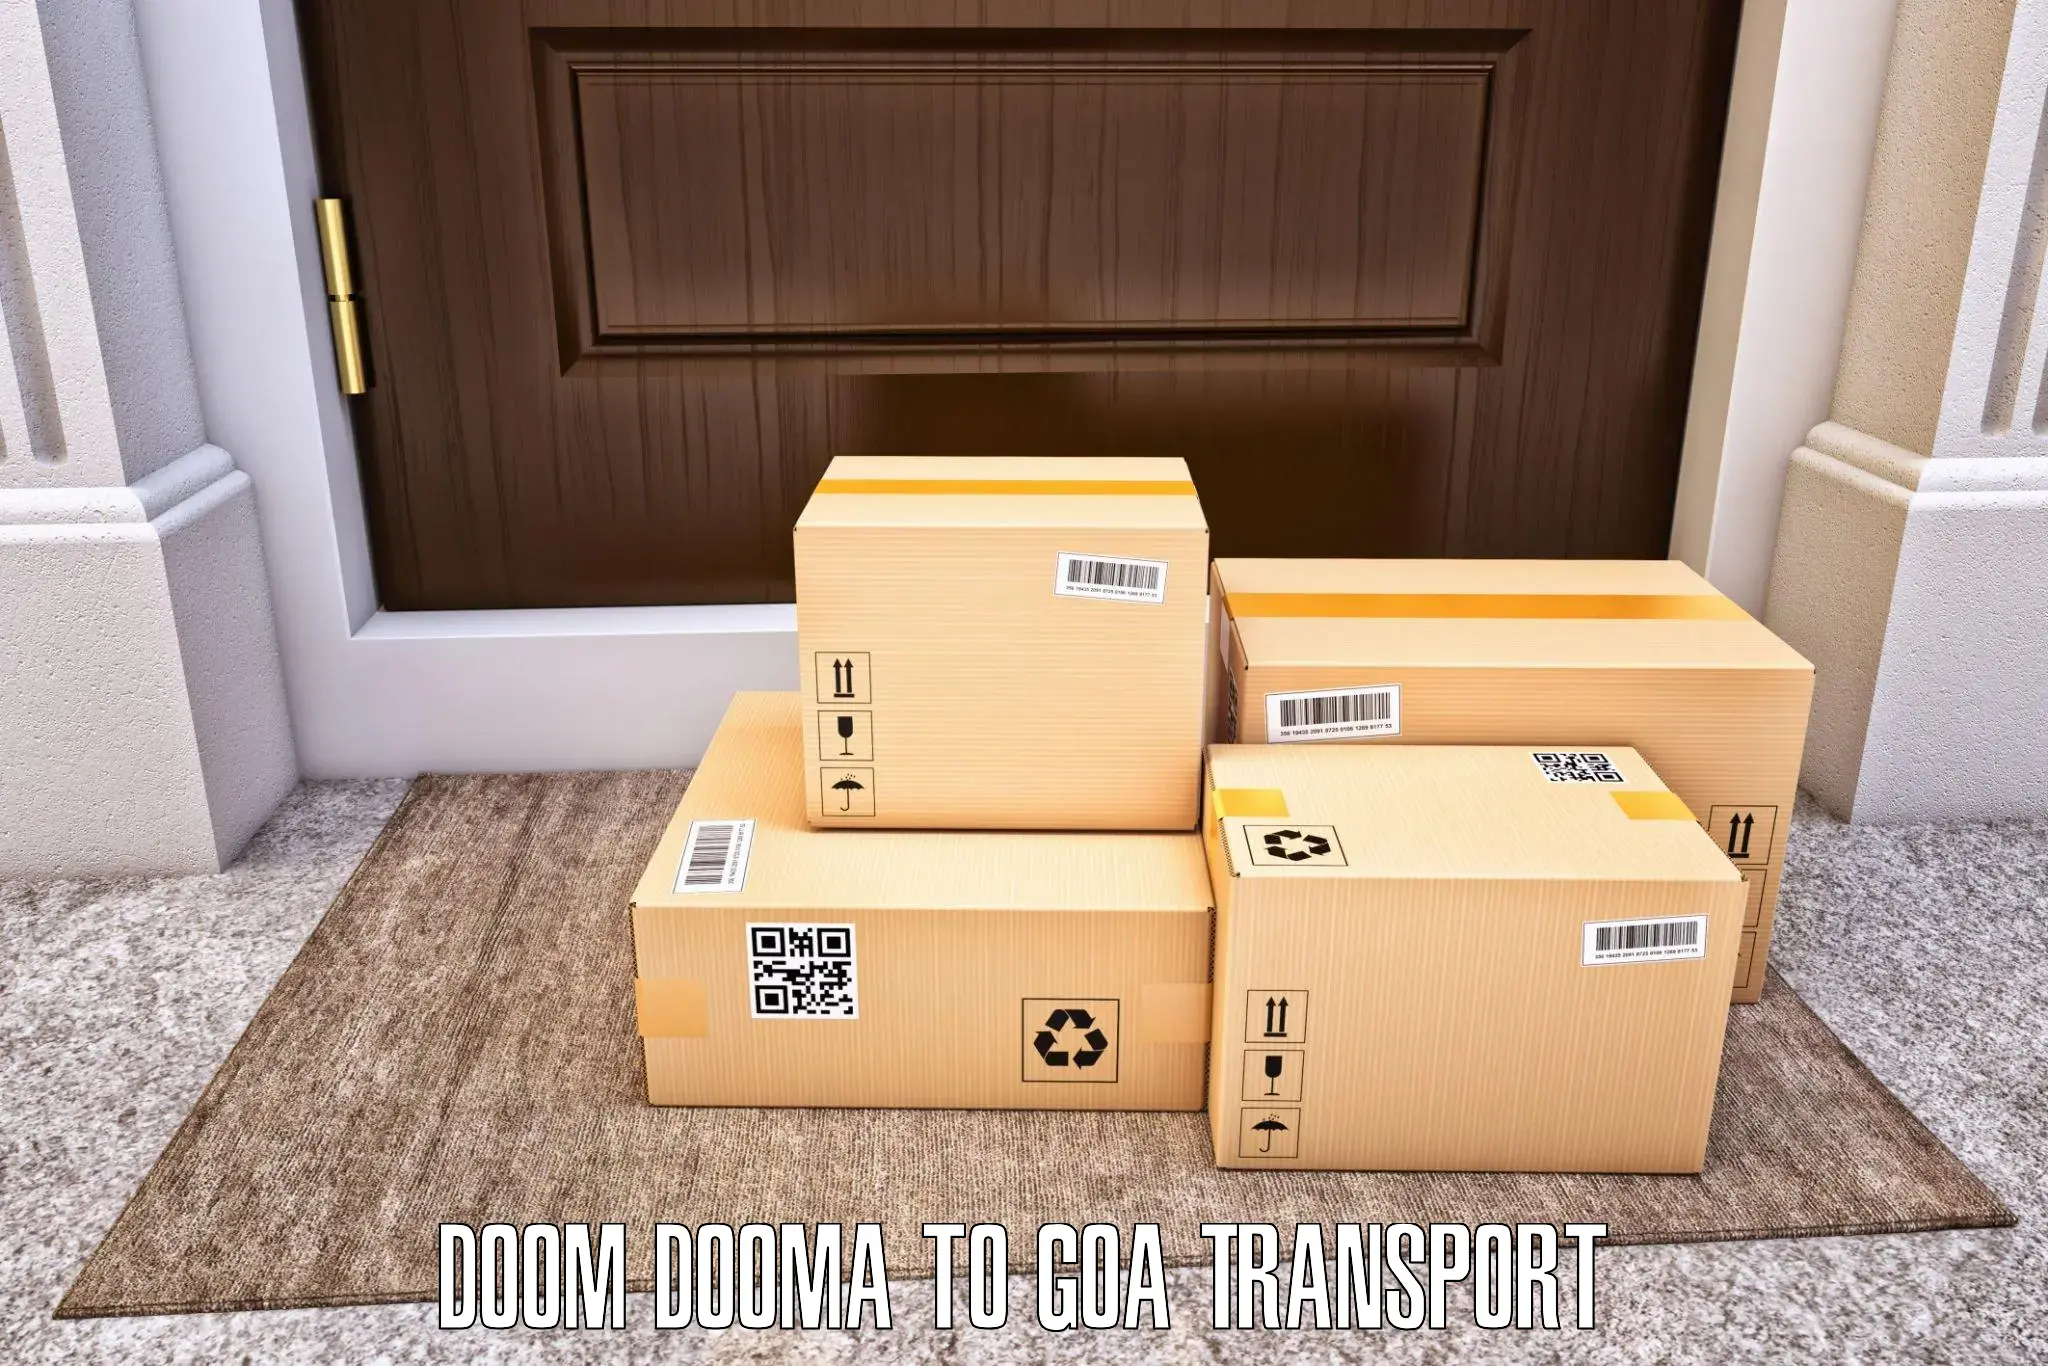 Domestic goods transportation services in Doom Dooma to Vasco da Gama